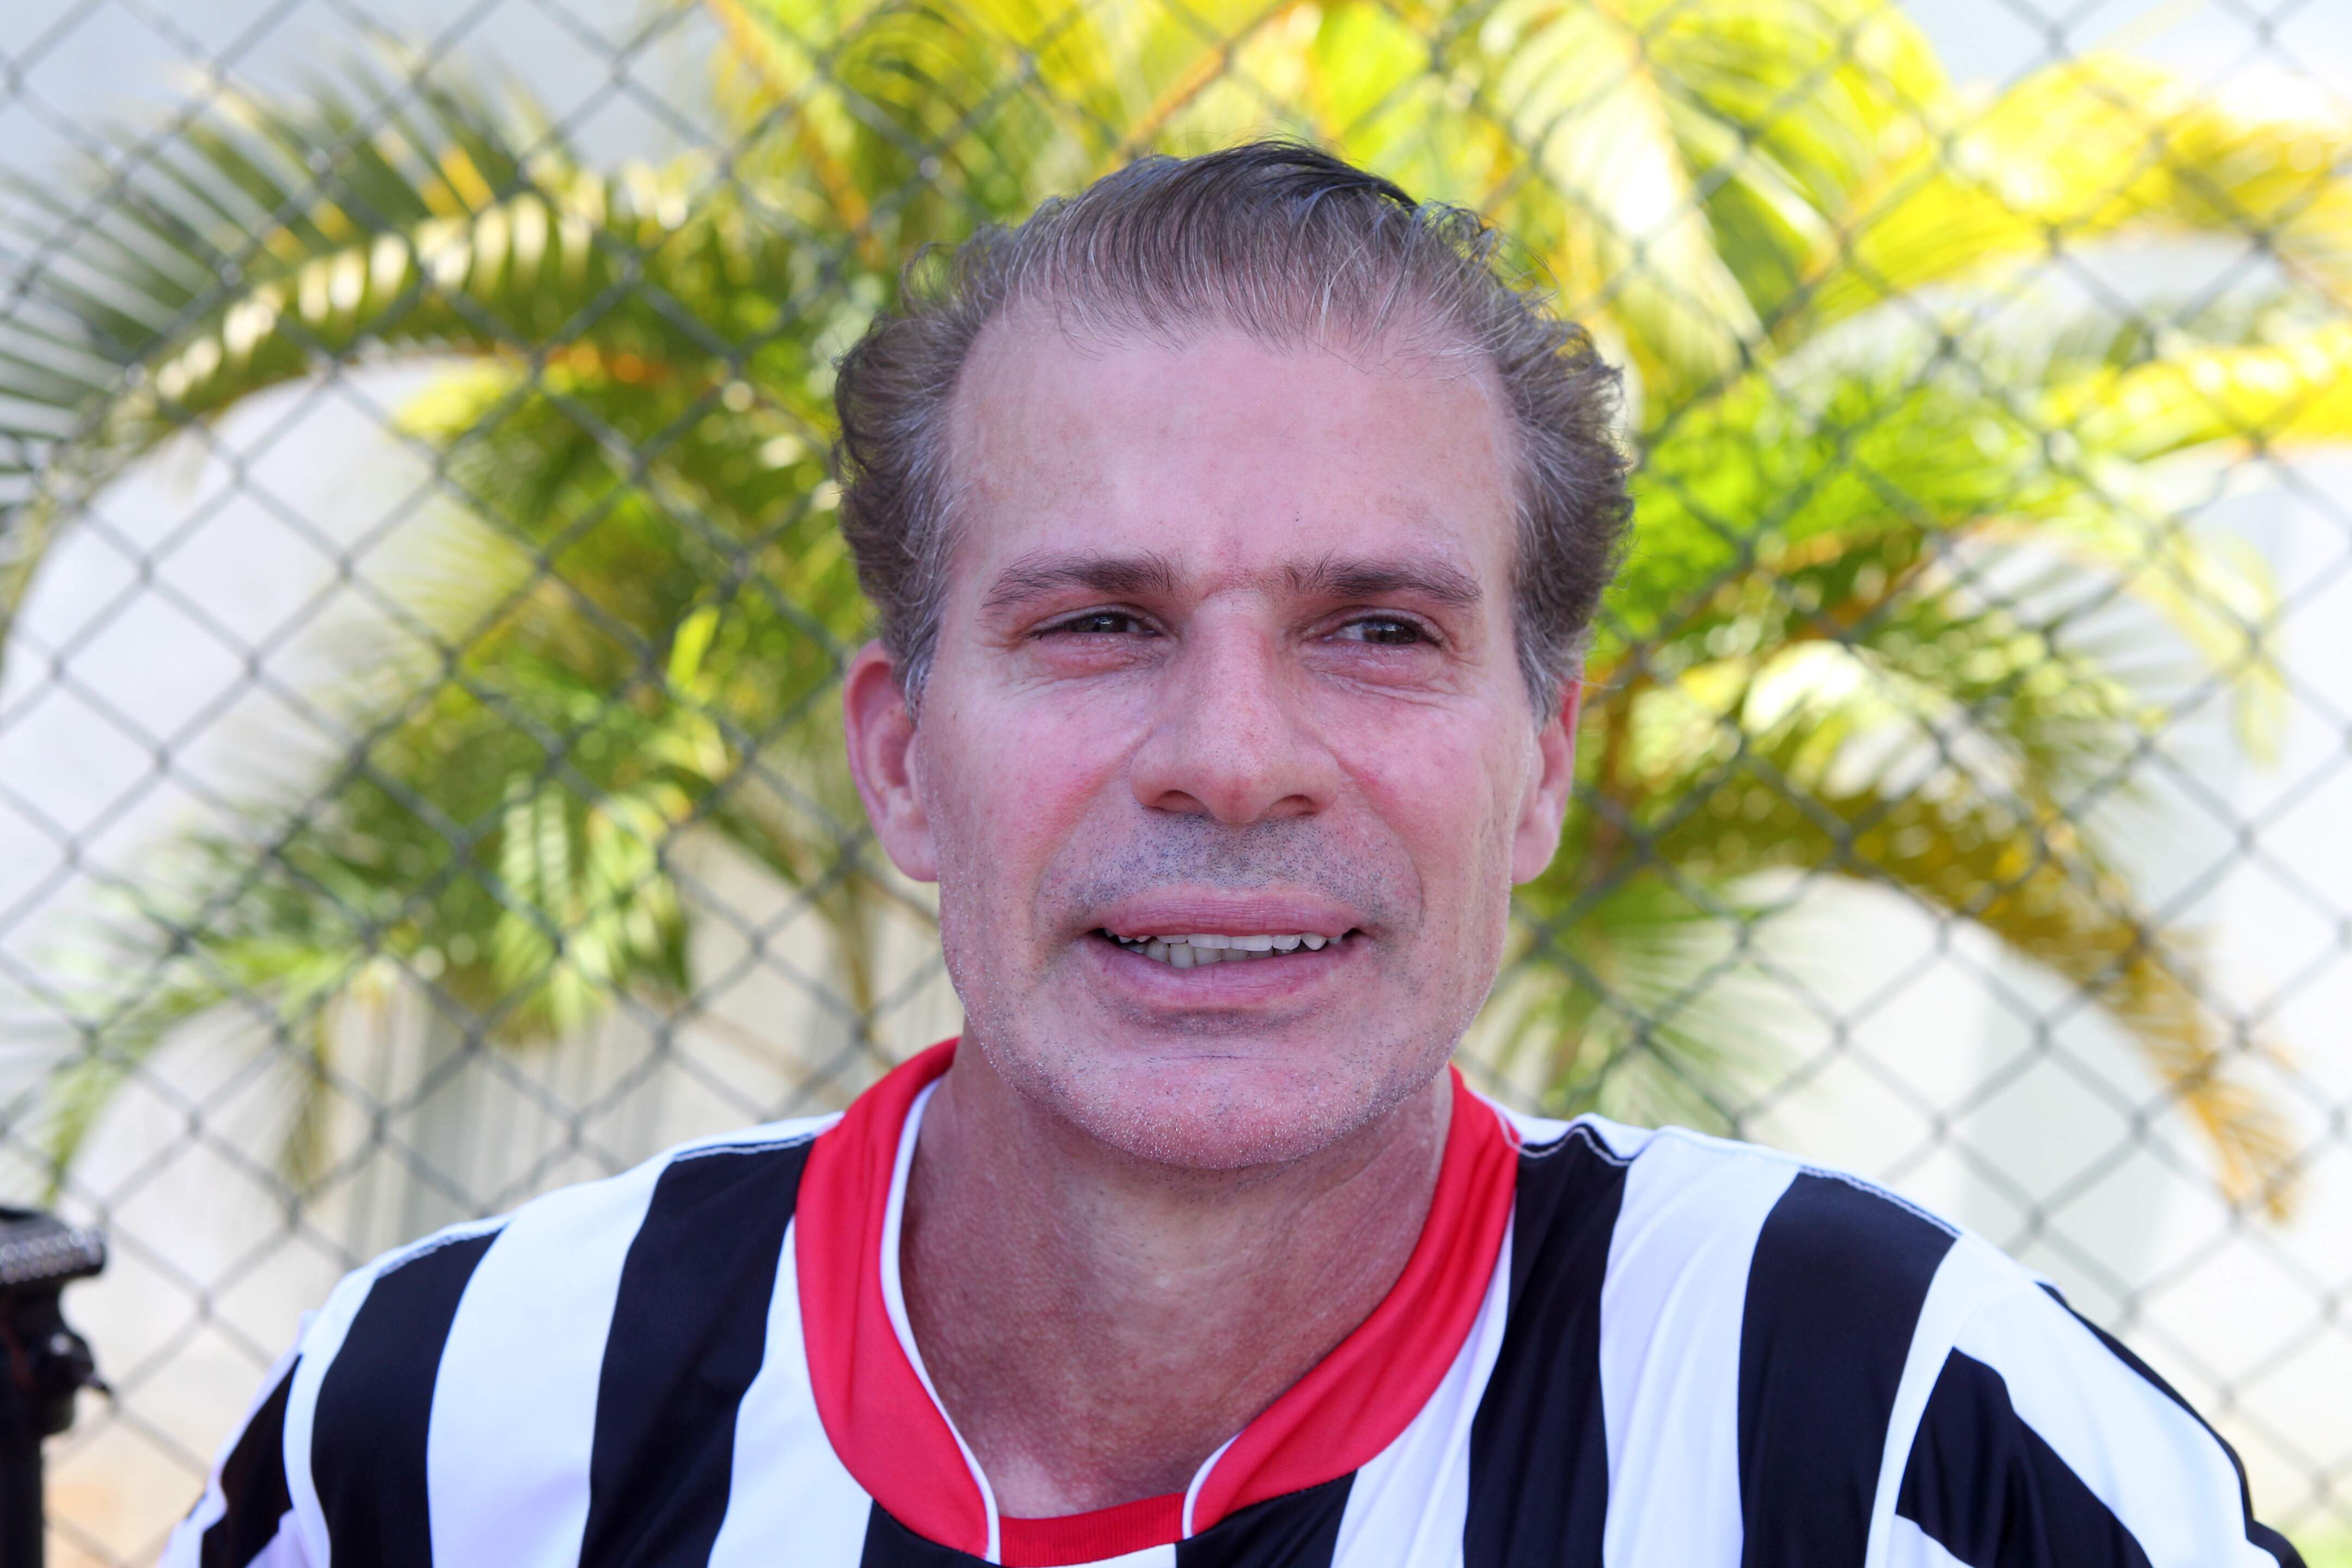 Túlio afirma que, apesar das provocações, é amigo de muitos jogadores do Santos de 1995